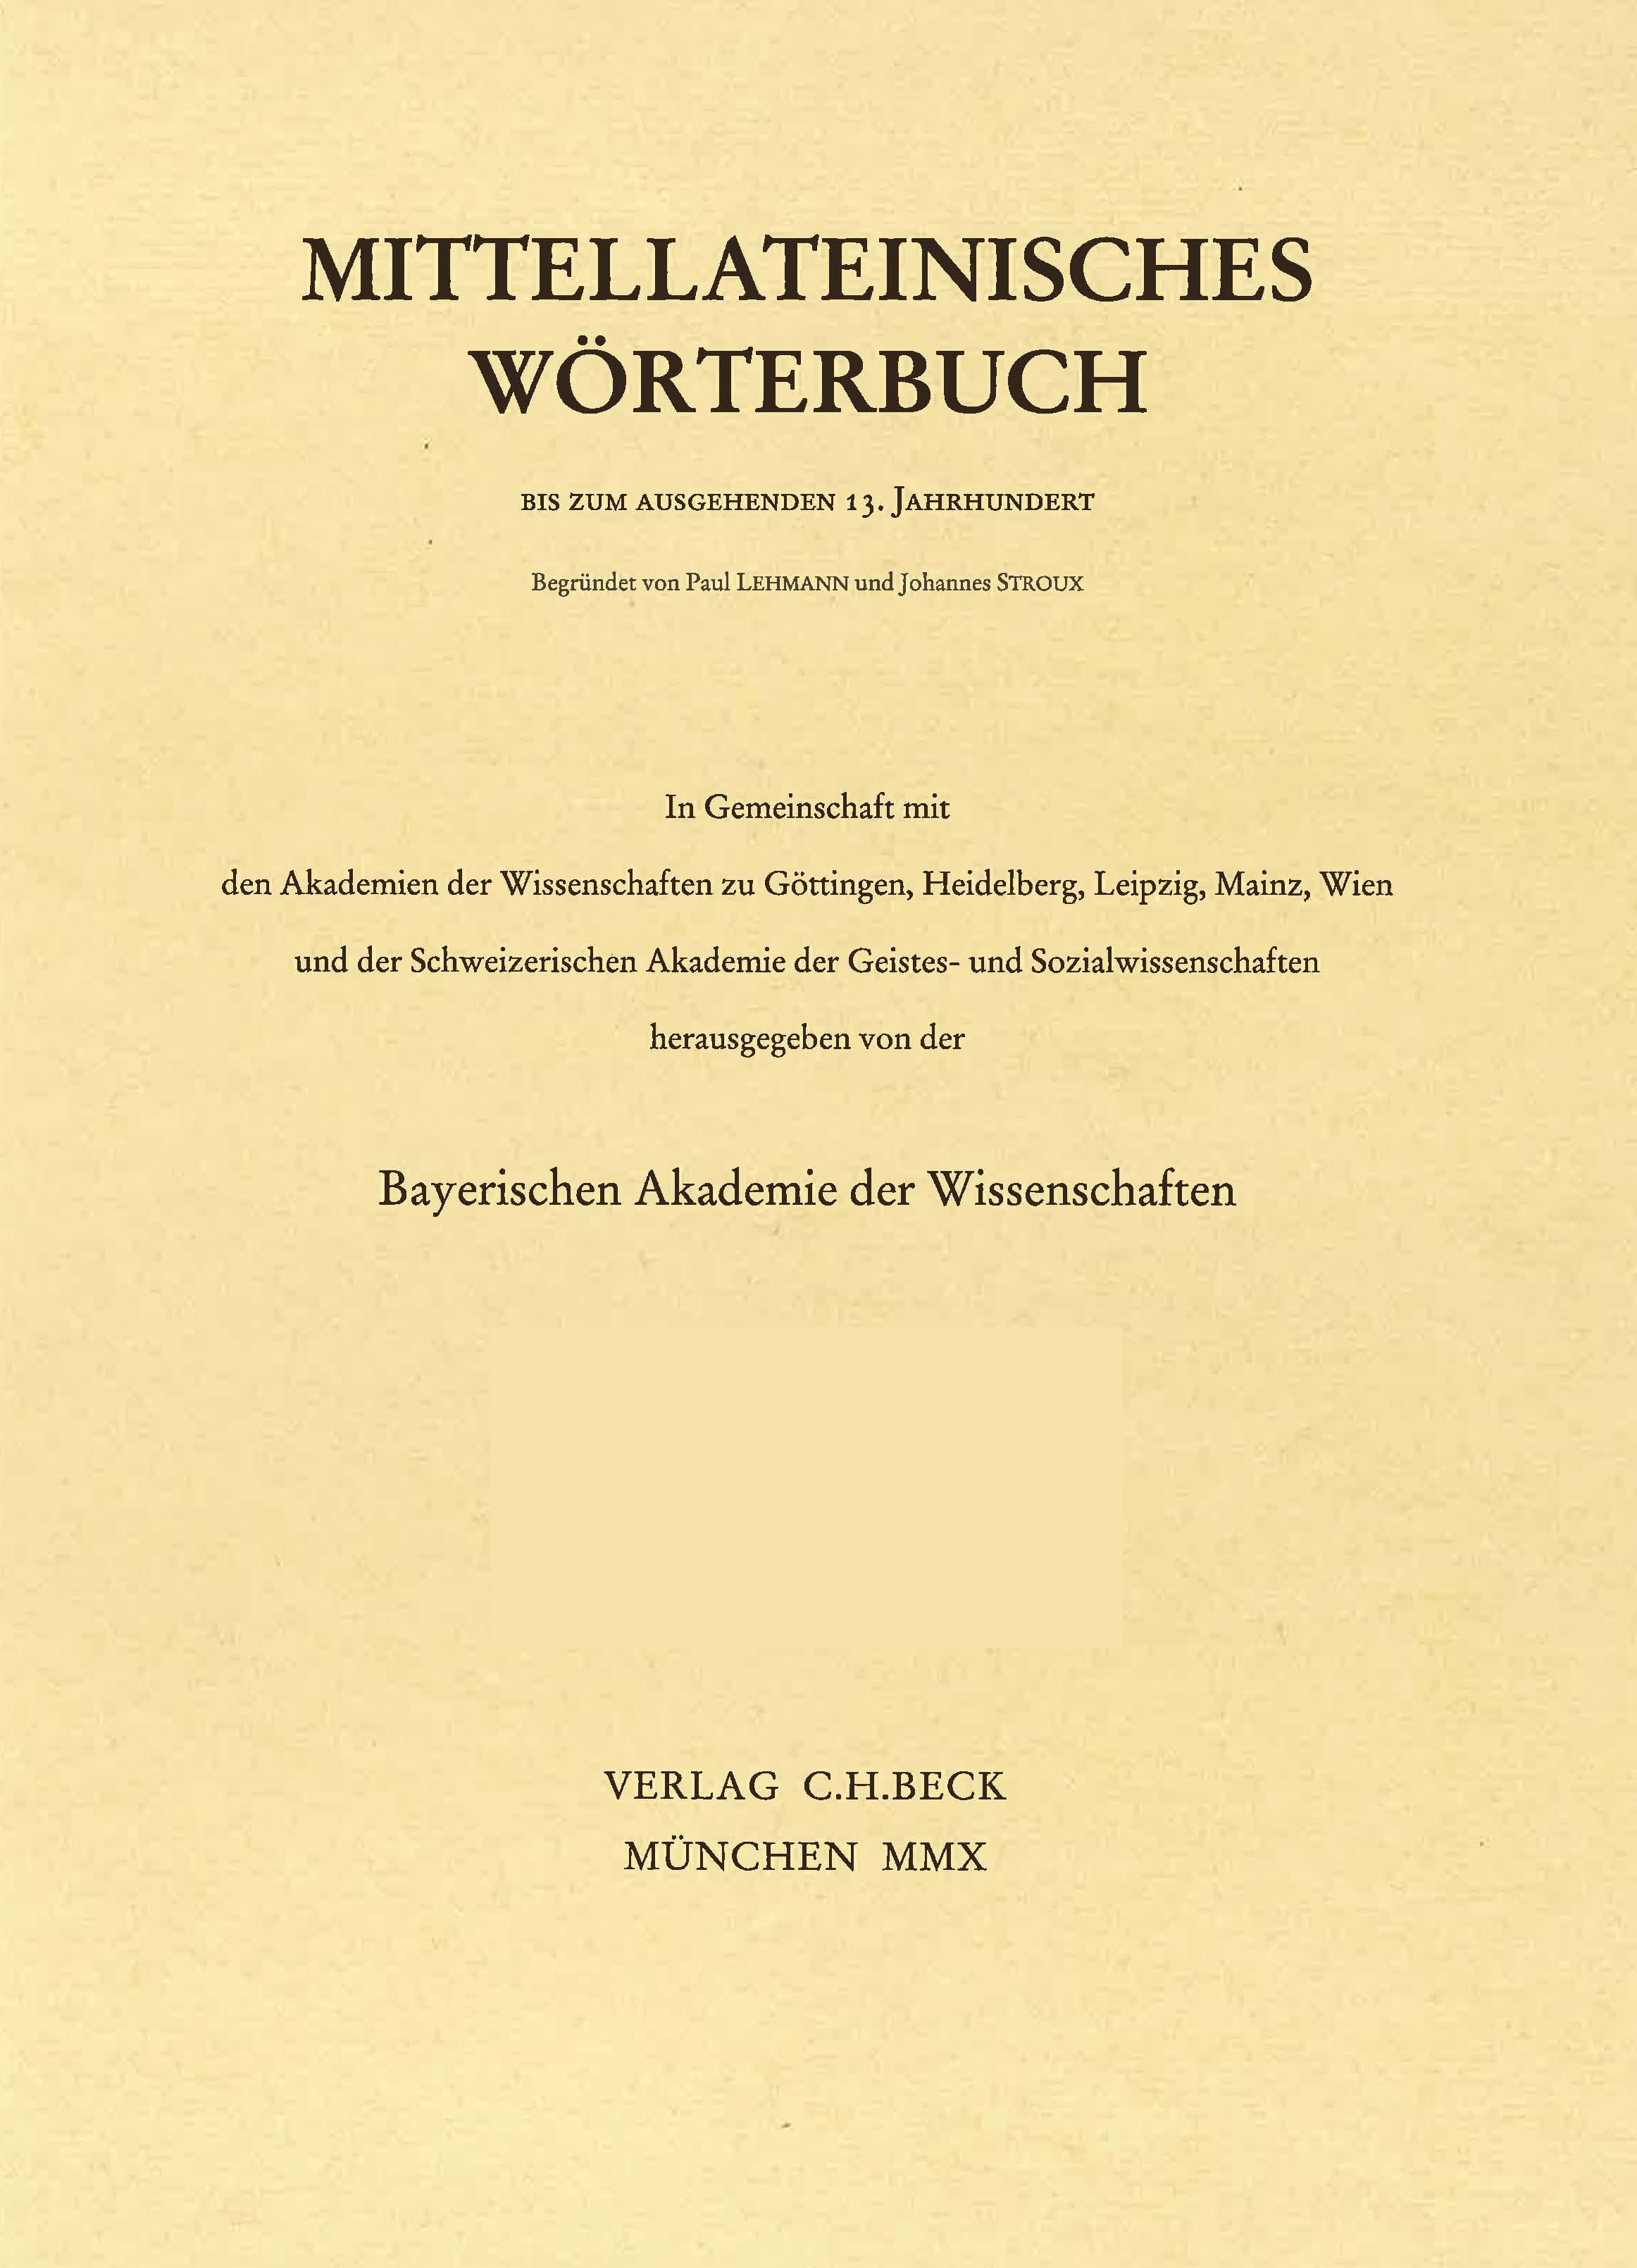 Cover:, Mittellateinisches Wörterbuch  49. Lieferung (instupefactibilis - intrepidus)